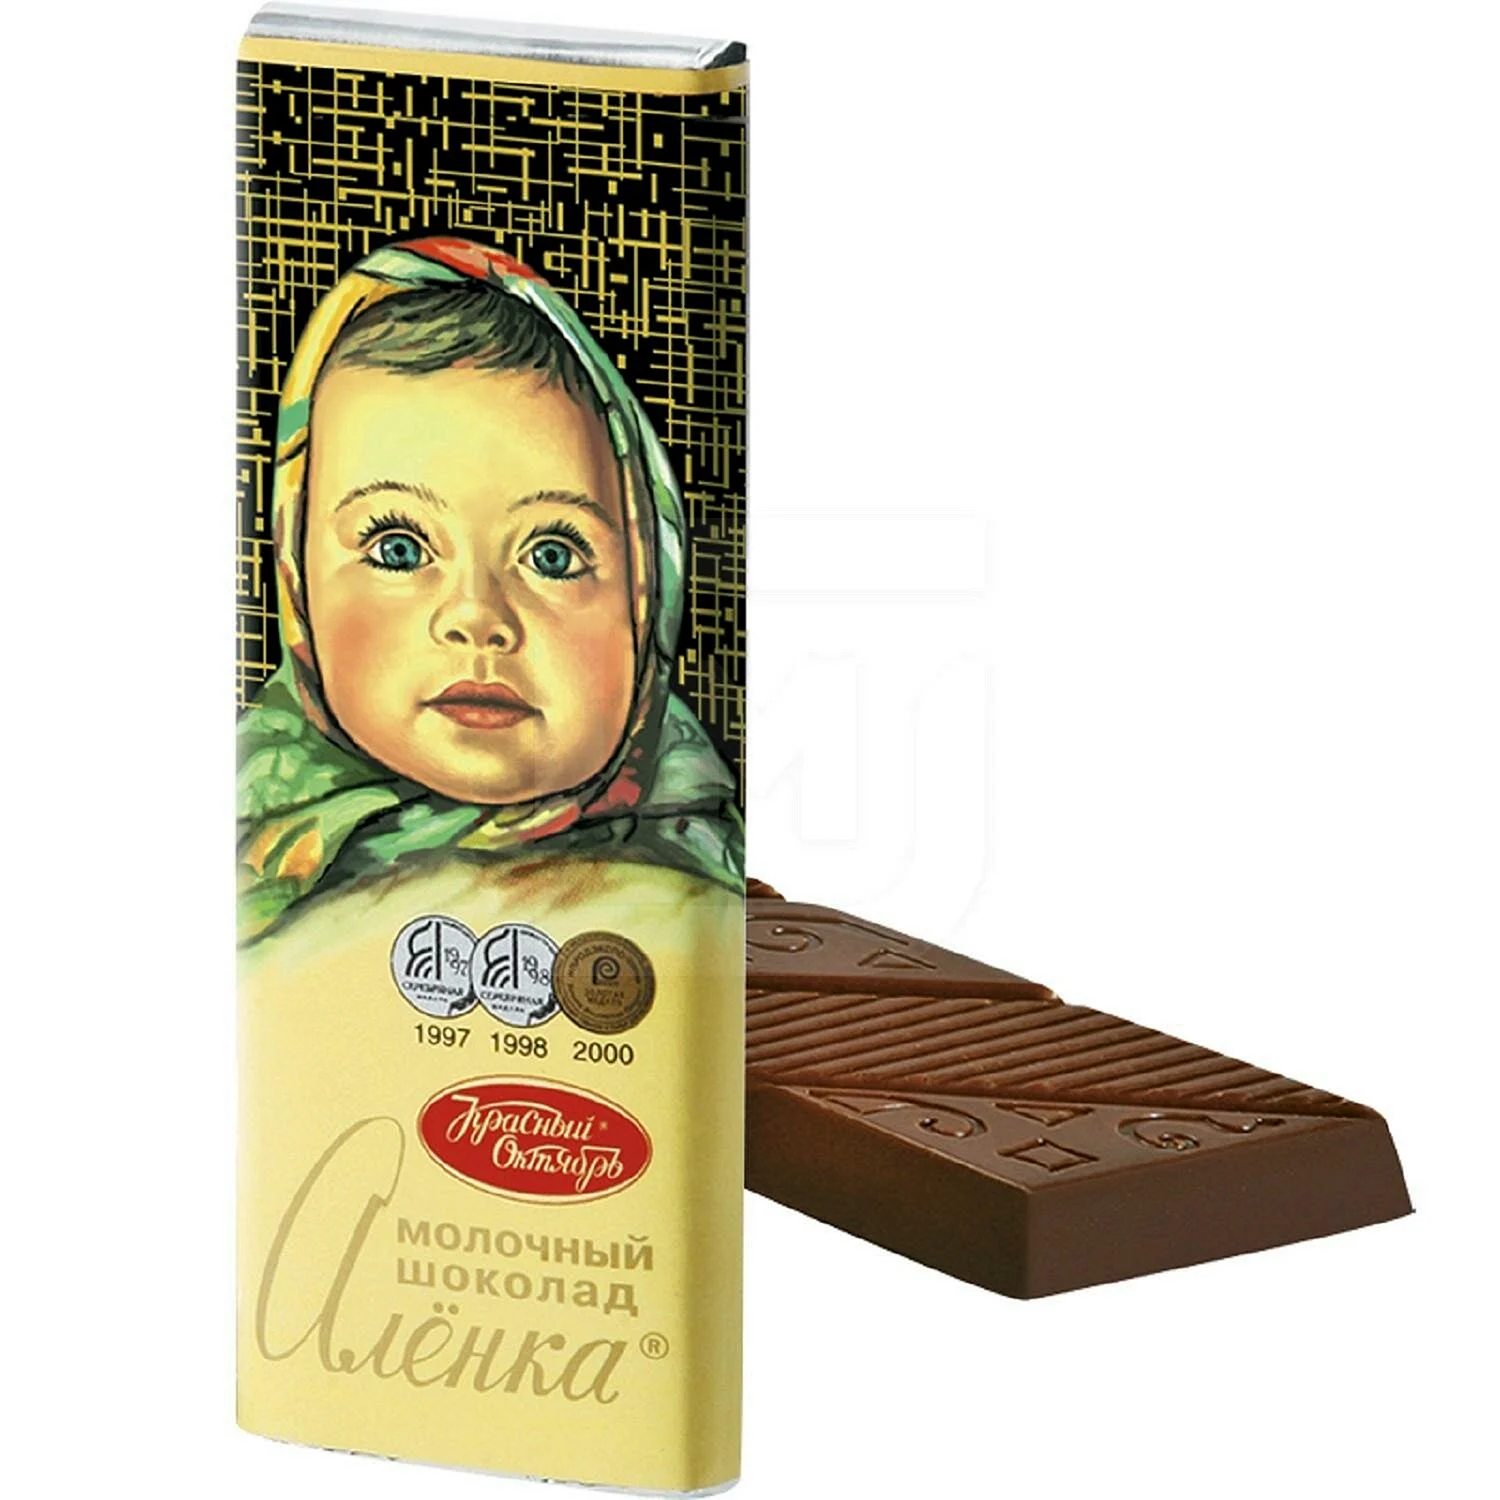 Шоколад Аленка 20г